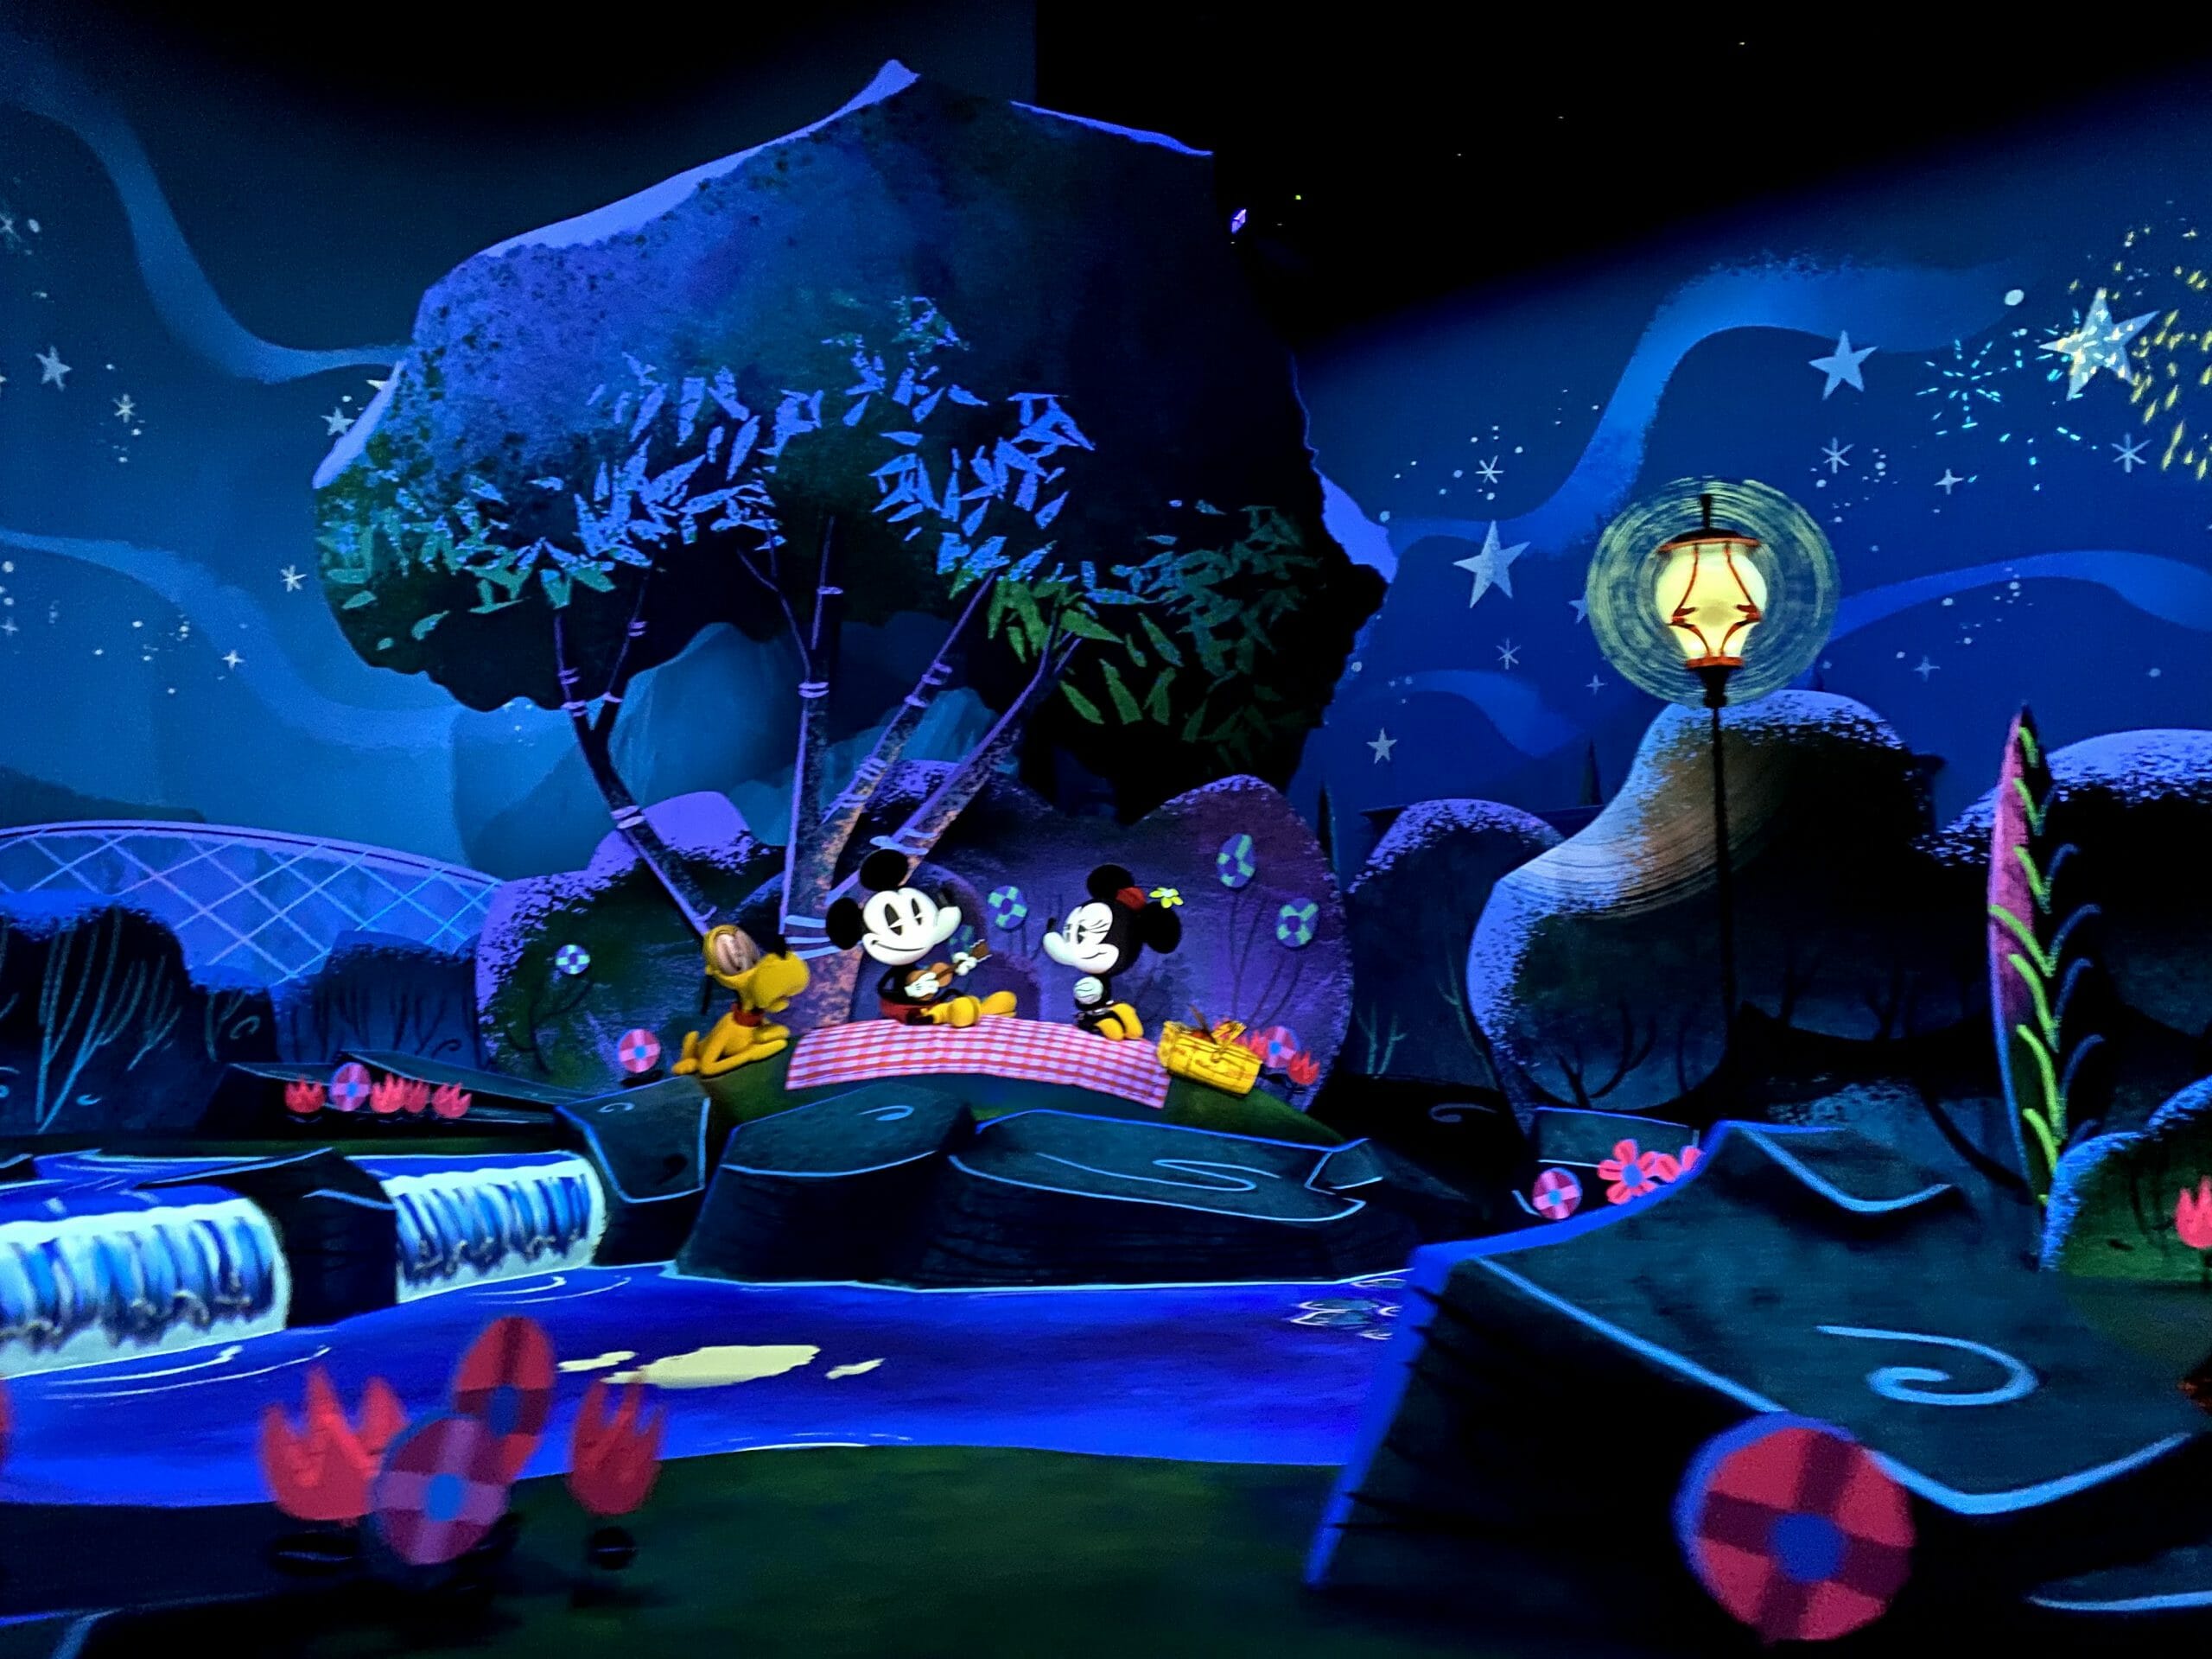 Imagem de divulgação da atração Mickey & Minnie's Runaway Railway, que mostra o Mickey, a Minnie e o Pluto fazendo um piquenique à noite sob árvores.